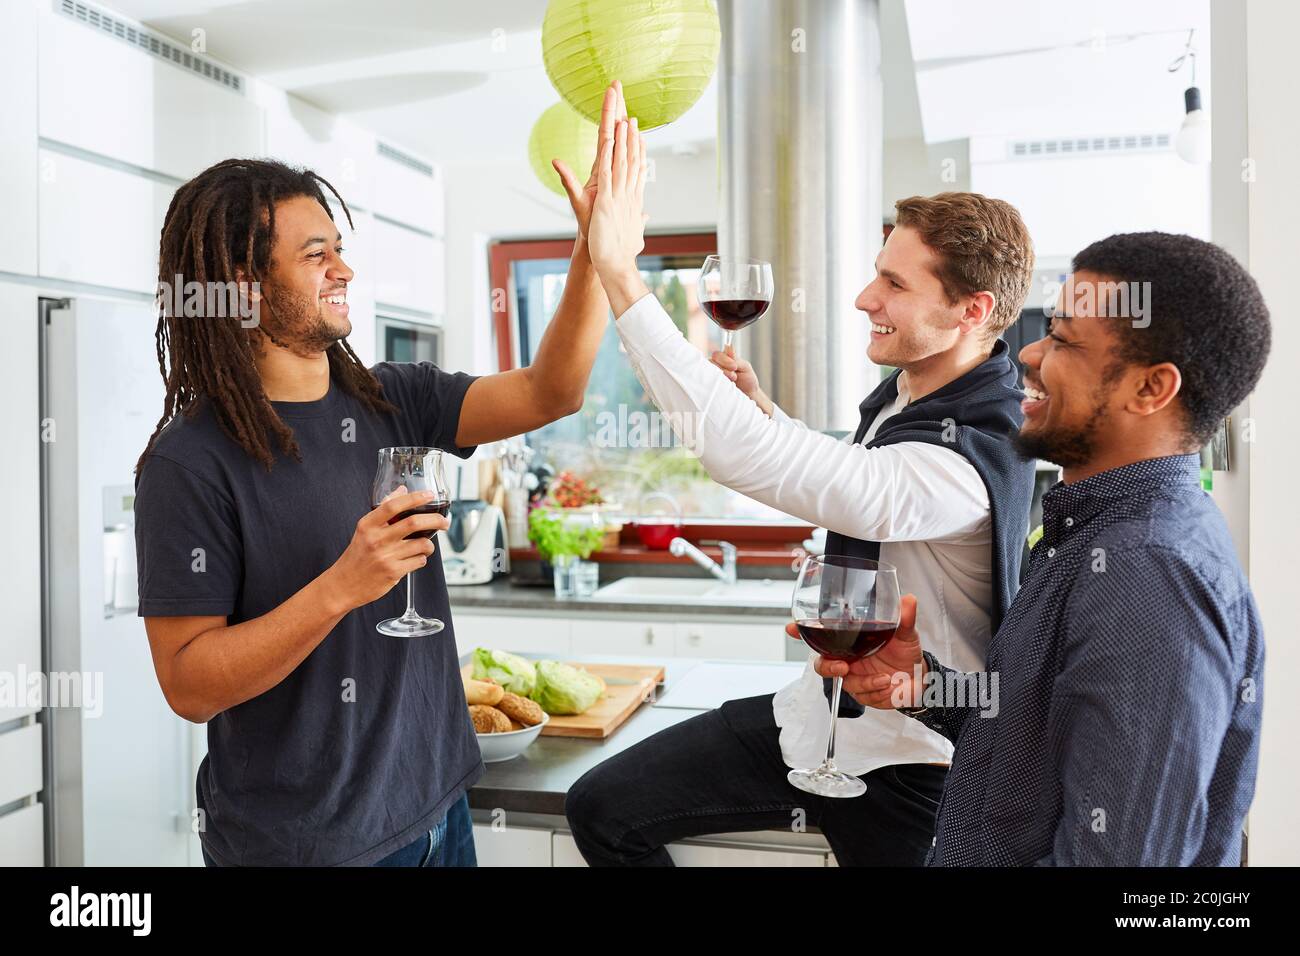 Gli amici studenti ridenti si danno cinque in alto a una festa a casa in cucina Foto Stock